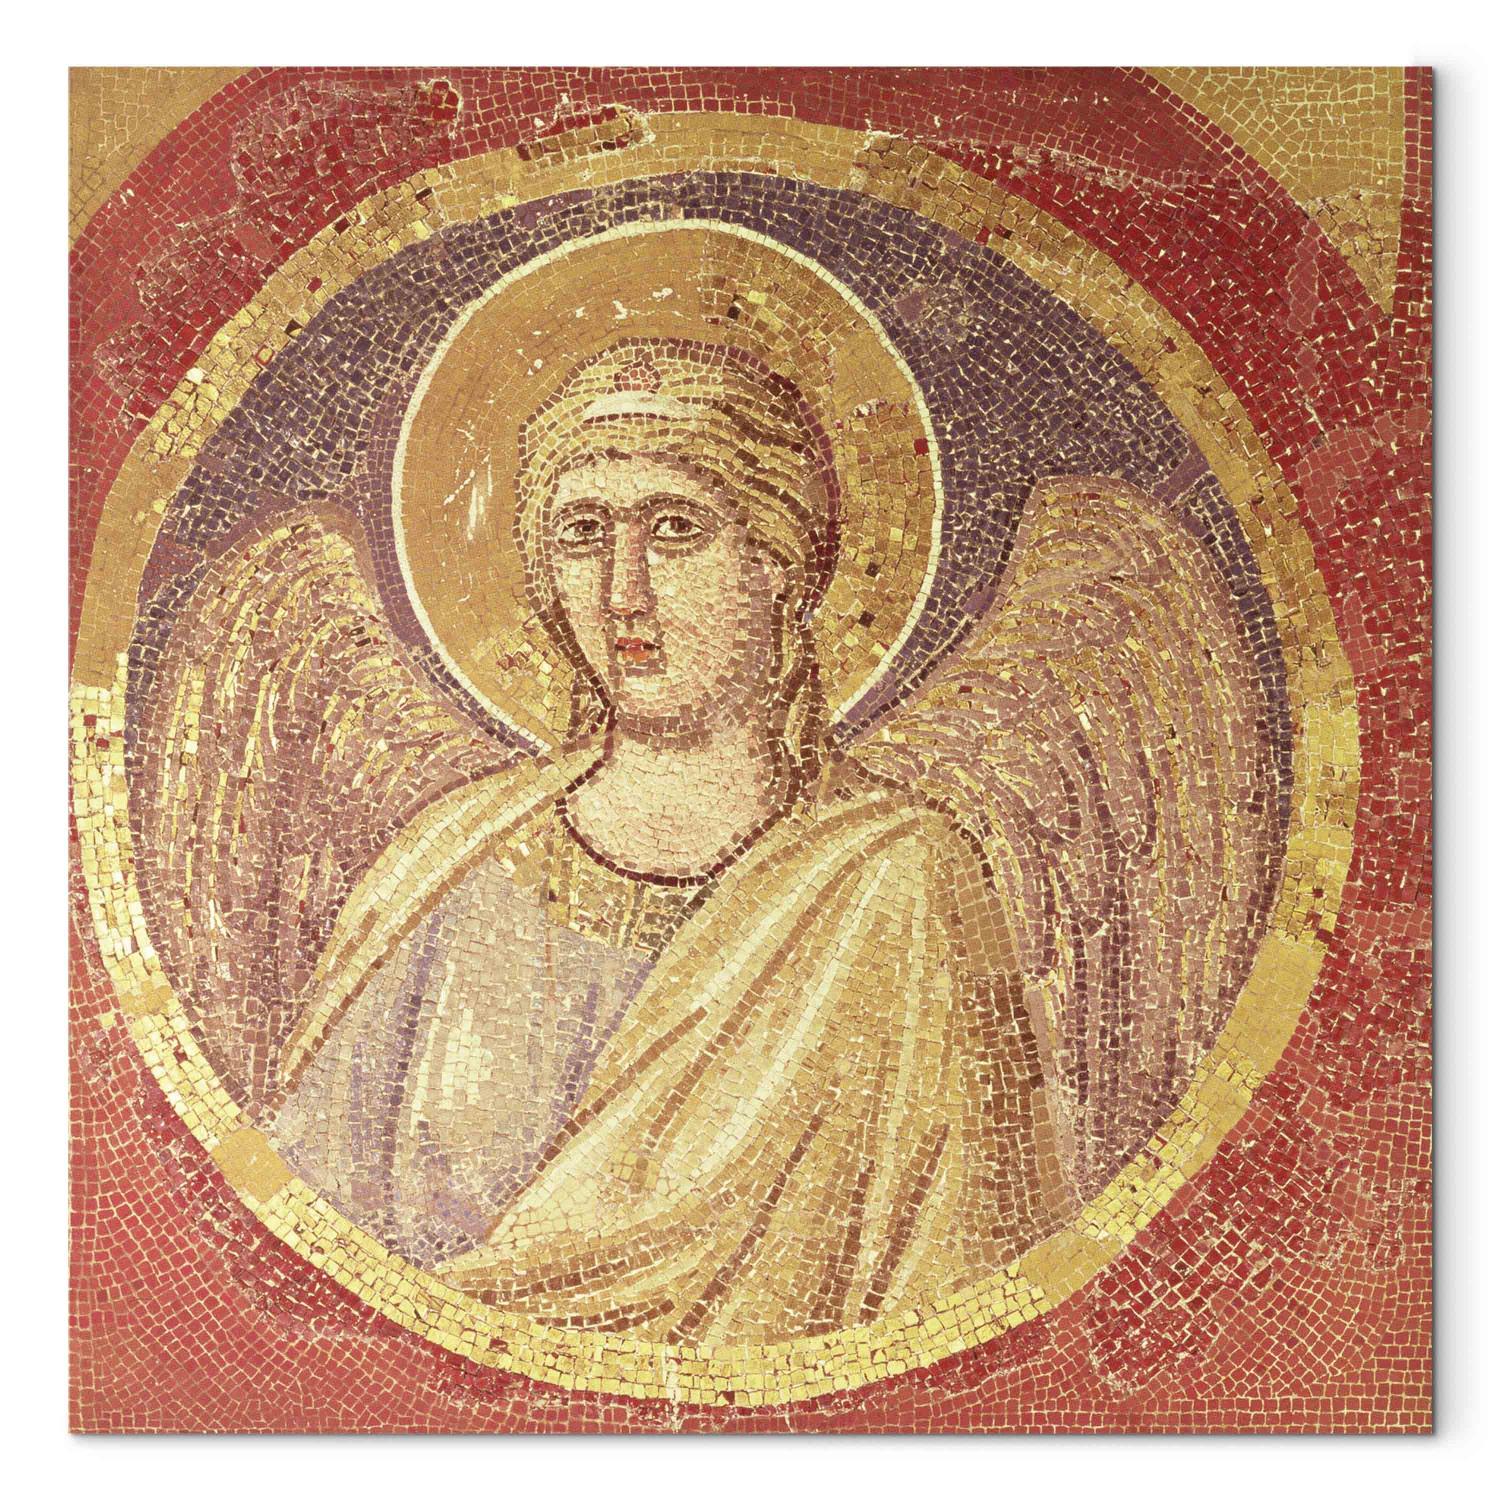 Reproducción de cuadro Detail of an angel from the Navicella, the Ship of the Church